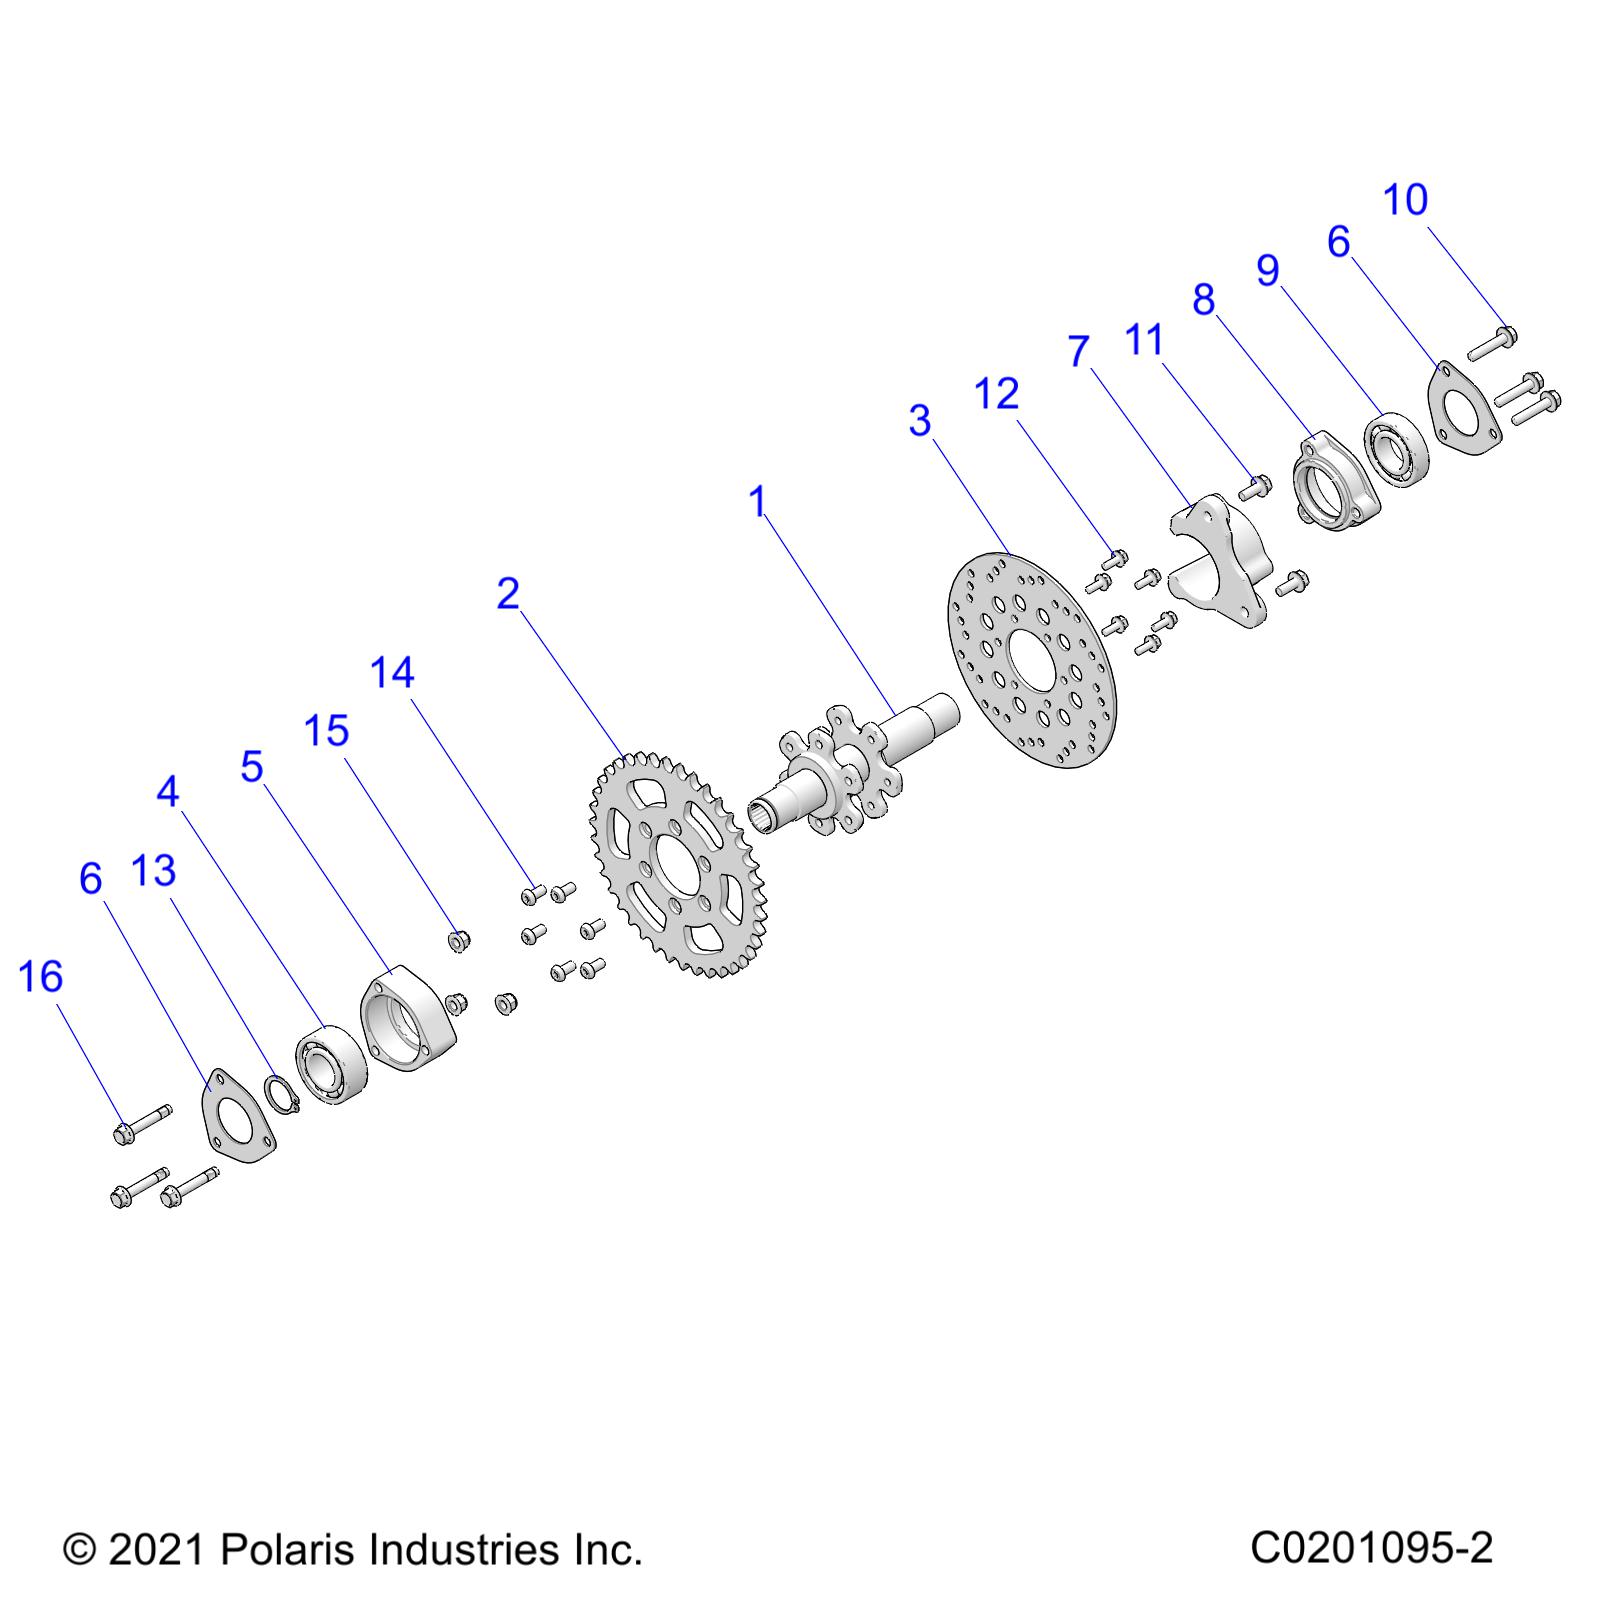 Foto diagrama Polaris que contem a peça 7517484